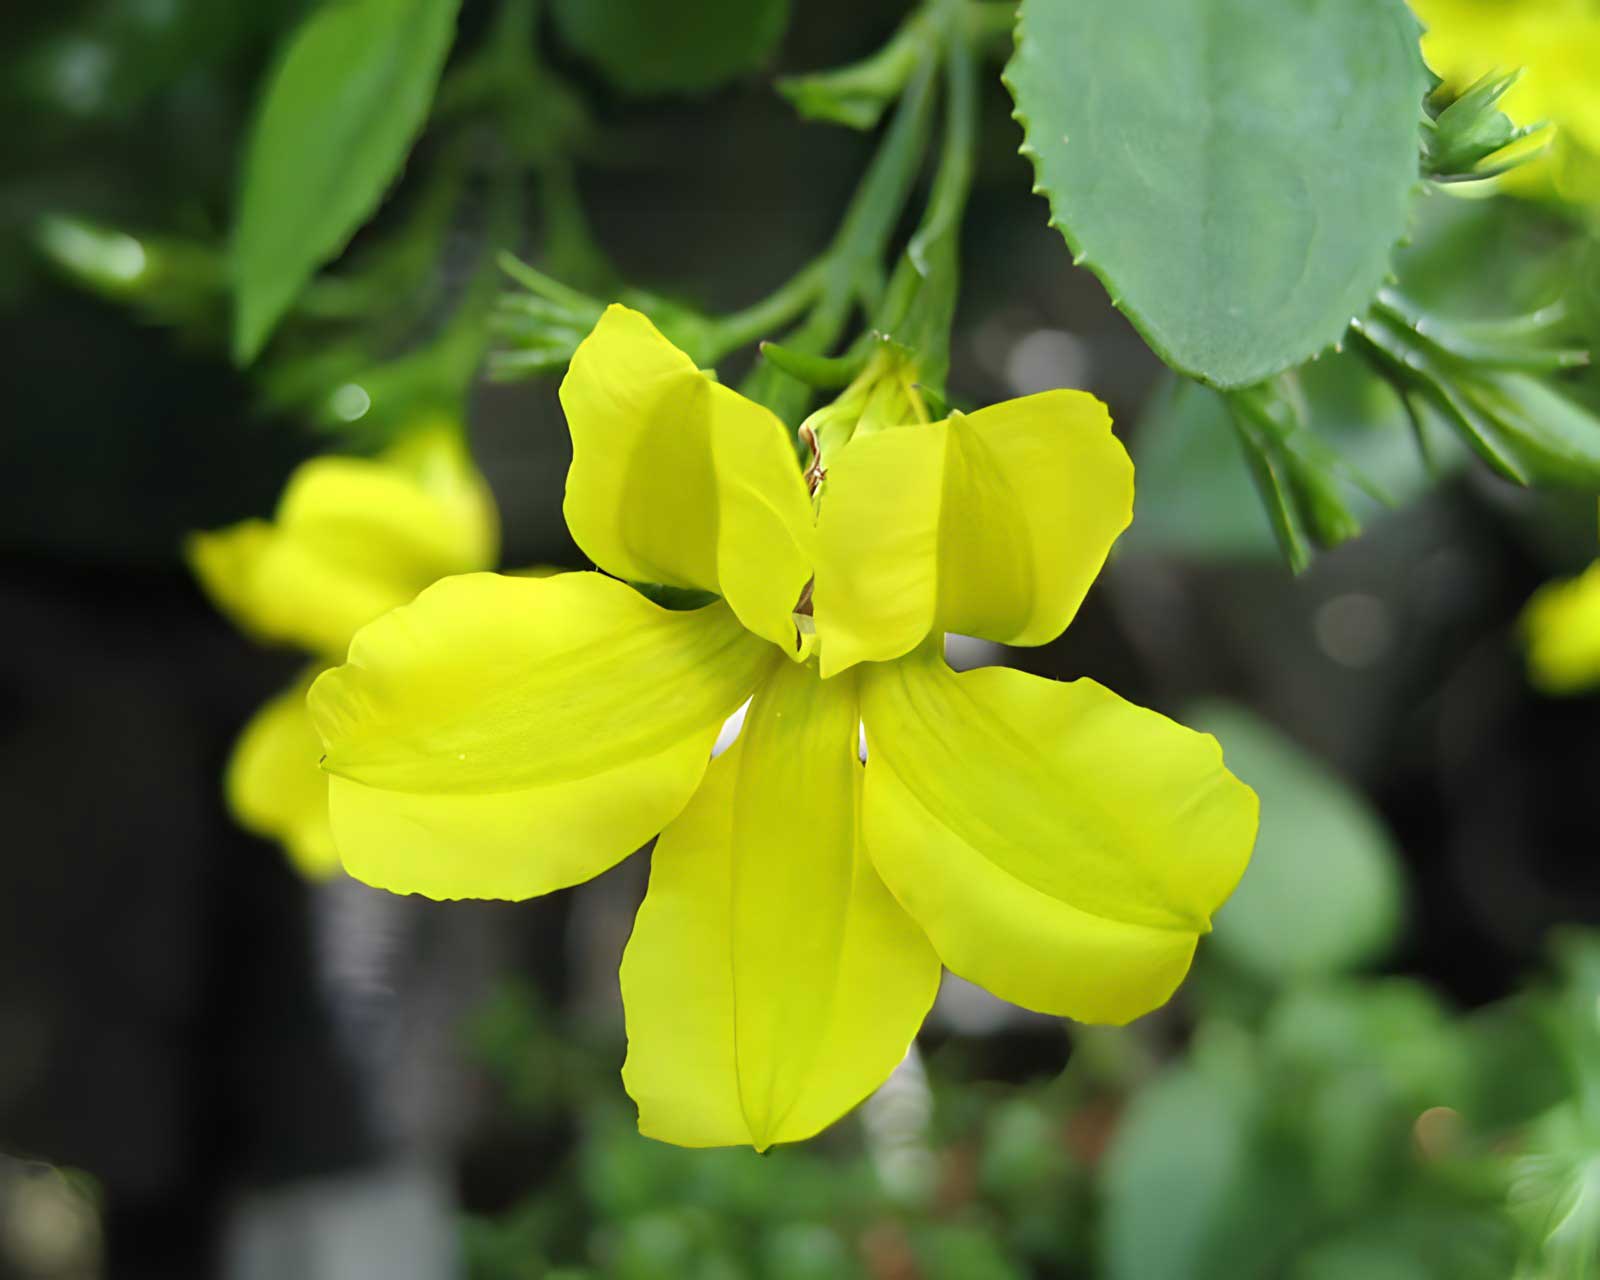 Goodenia - yellow flowers